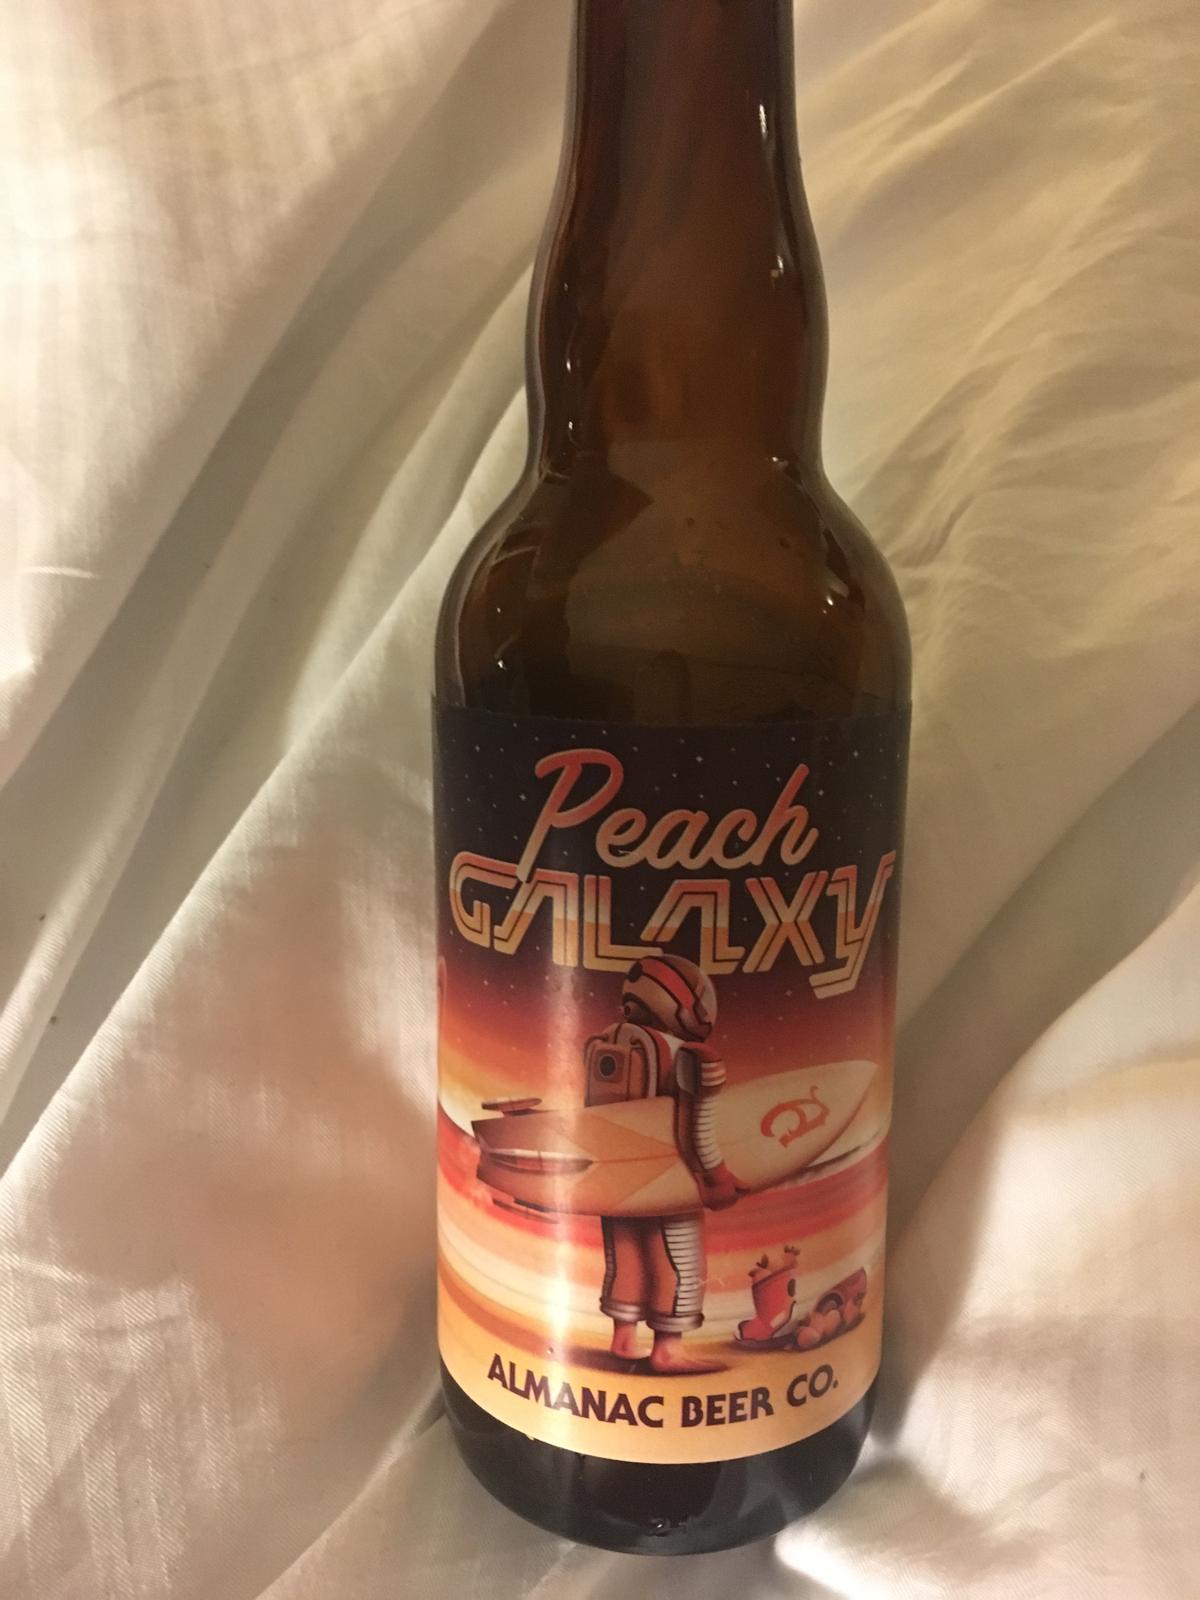 Peach Galaxy